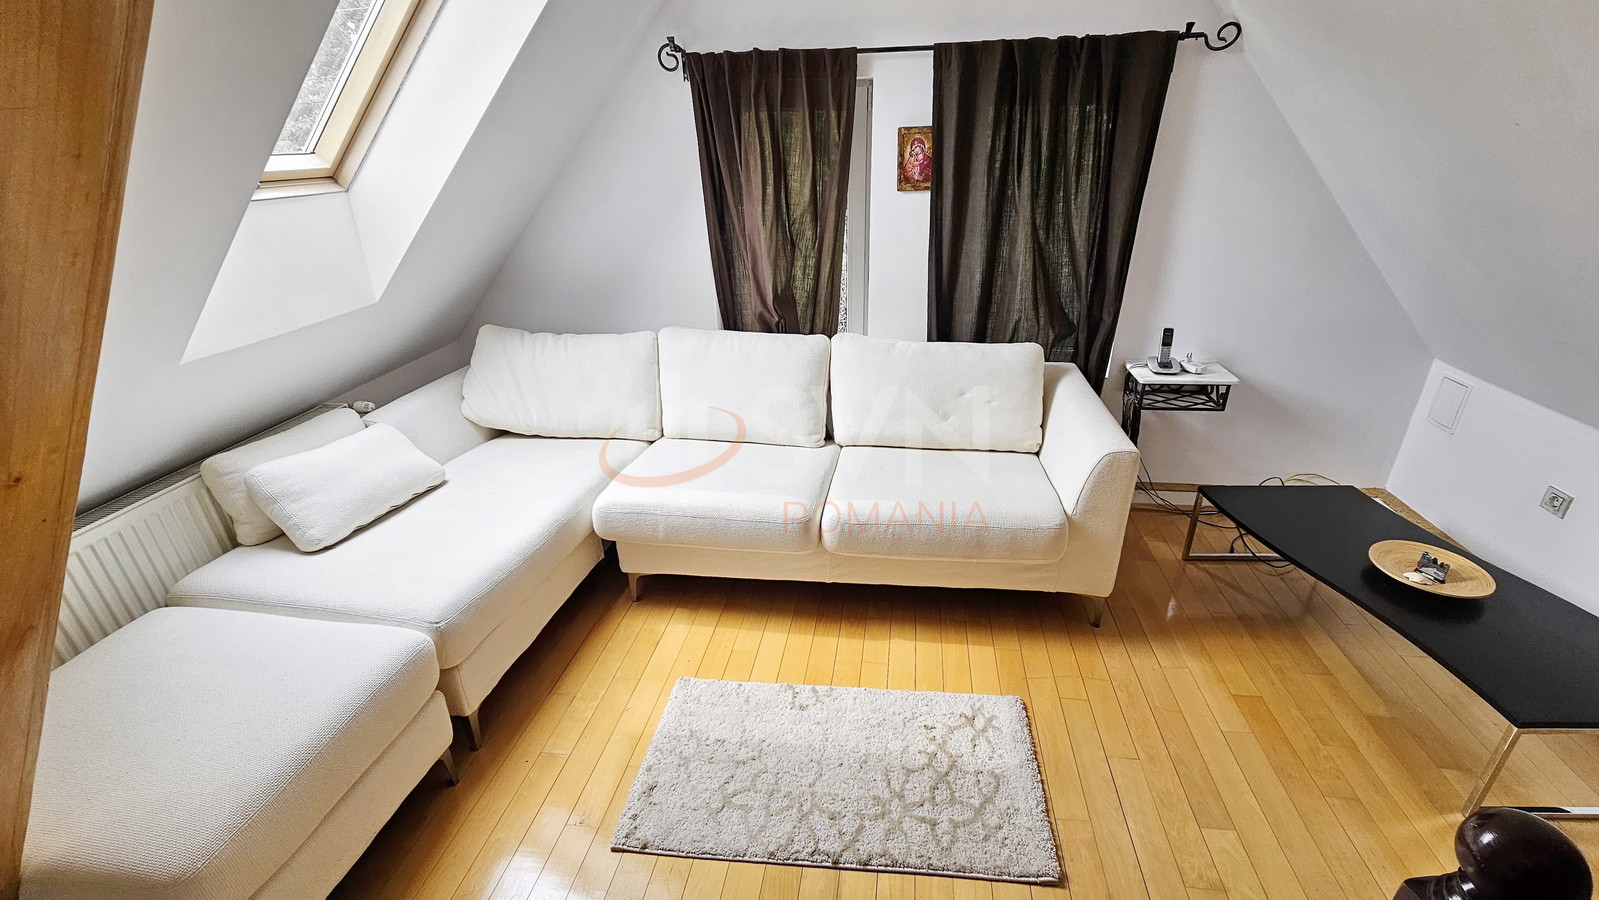 Apartament, 5 camere Brasov/Schei